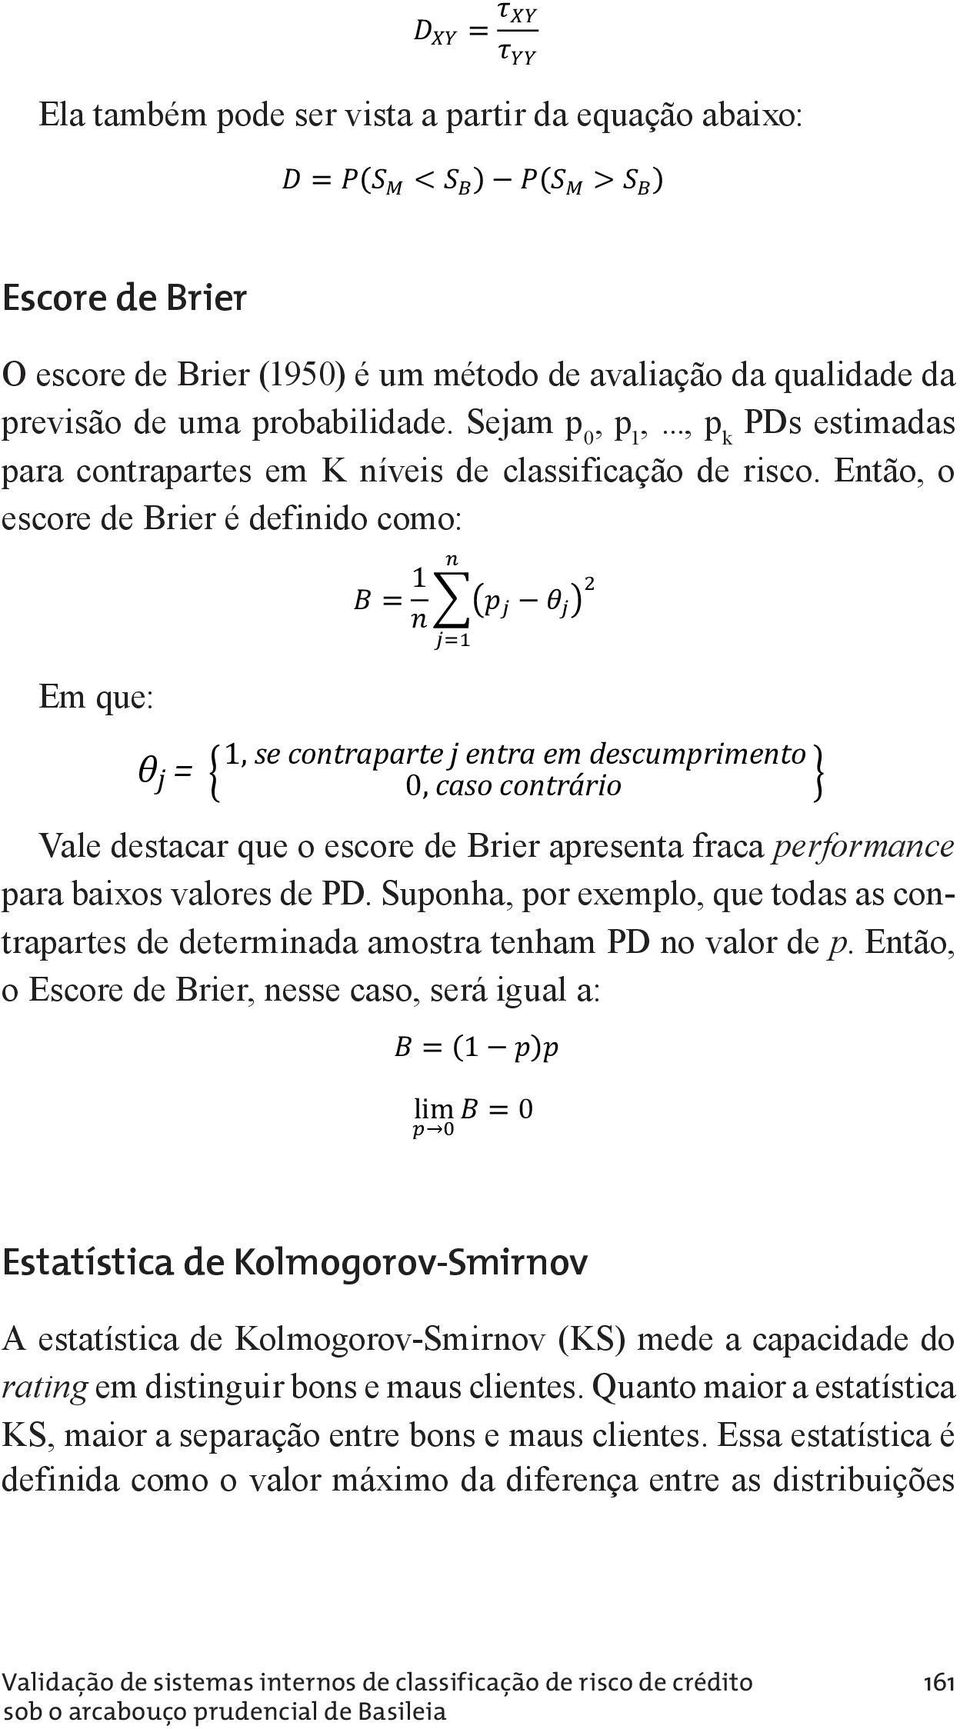 A a estatística probabilidade ττ " de o Kendall maior pode ser vista como uma diferença entre duas probabilidades: probabilidade de maior valor pode de ser X vista estar como associado uma diferença